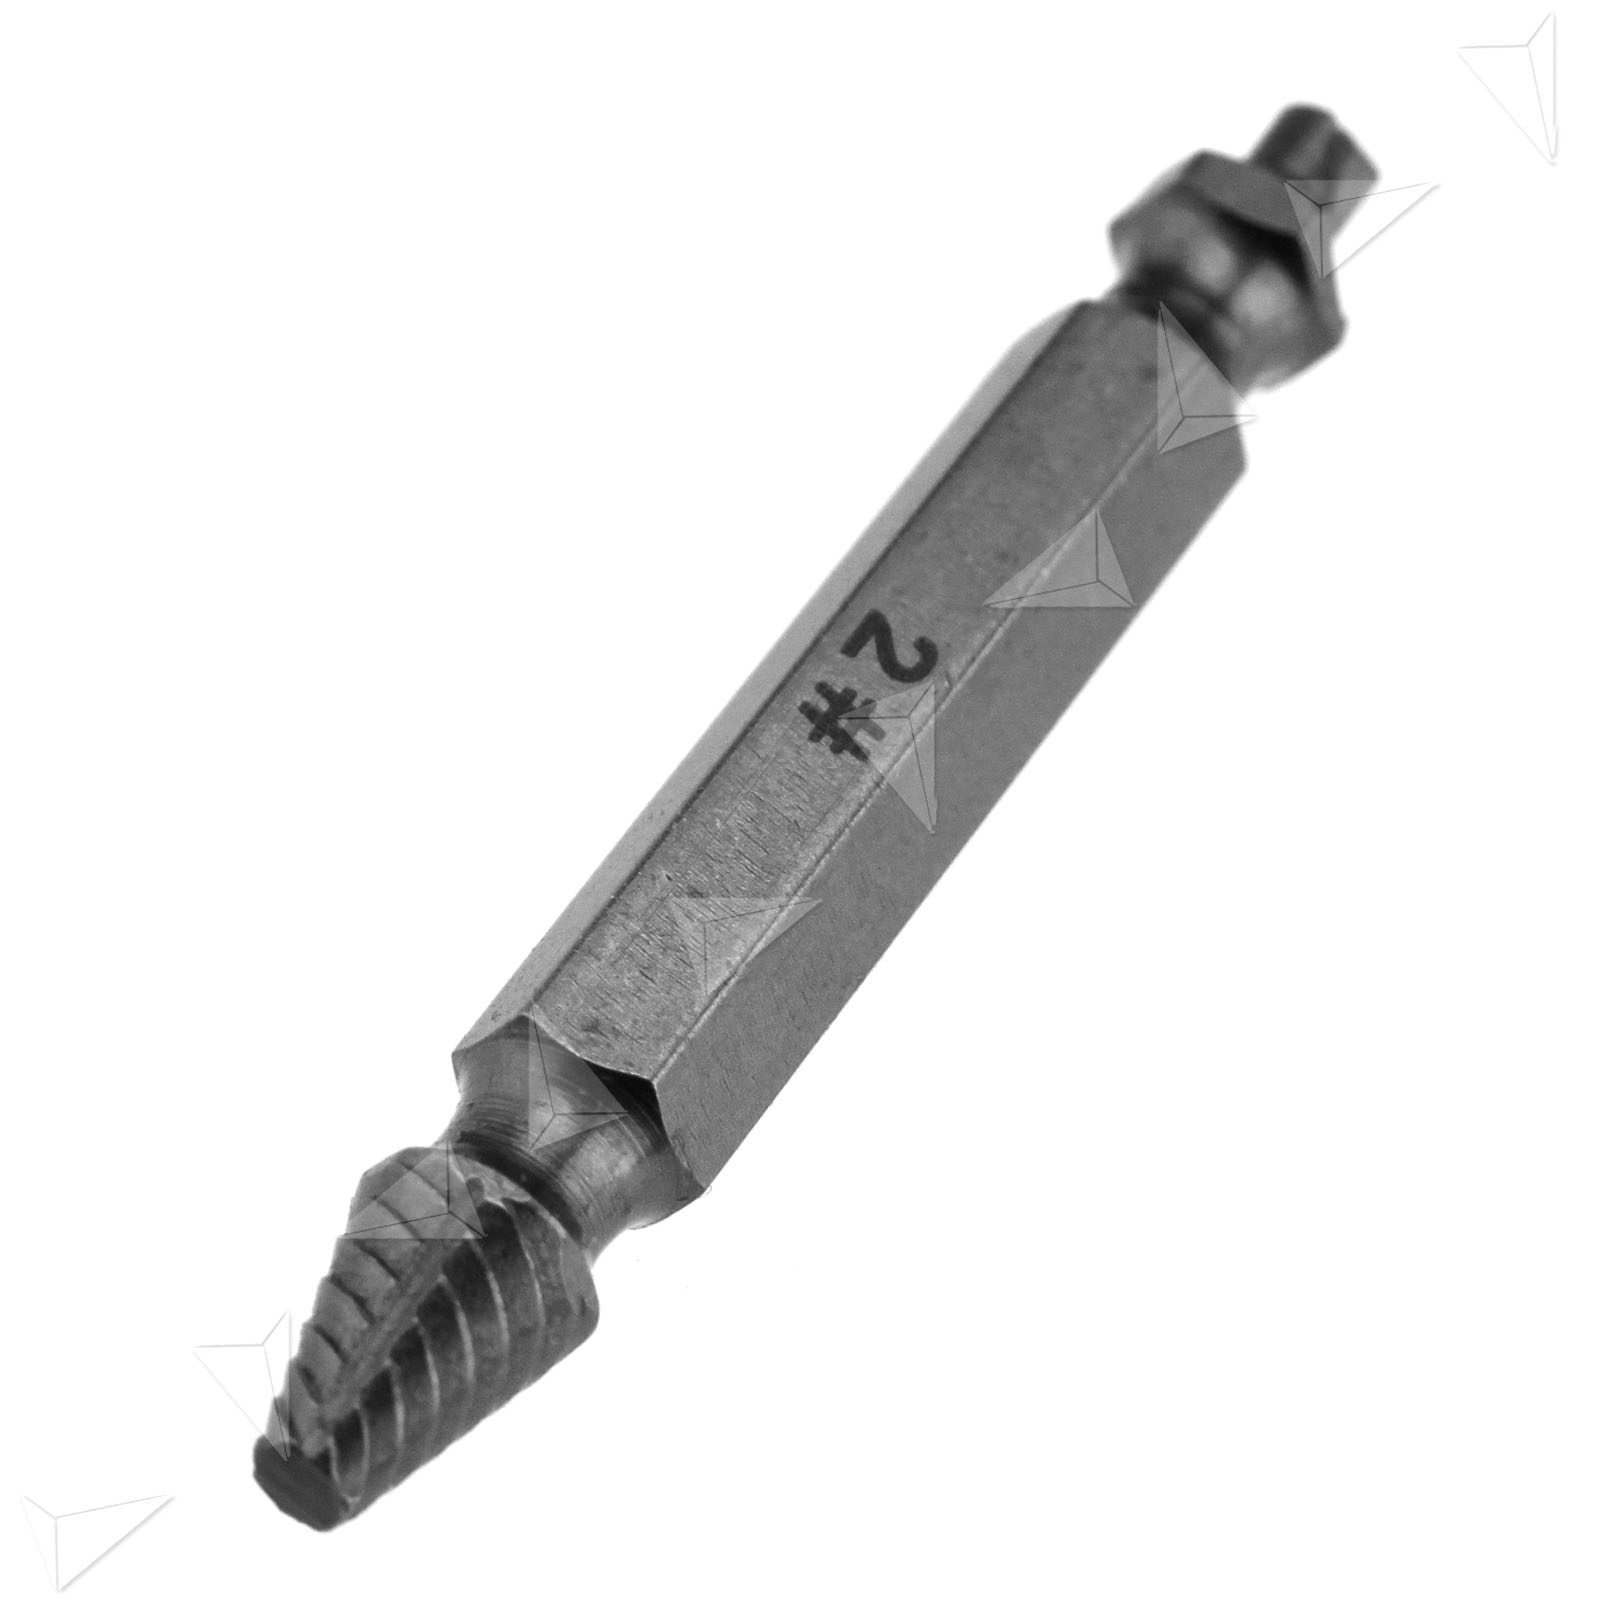 deep broken screw extractor